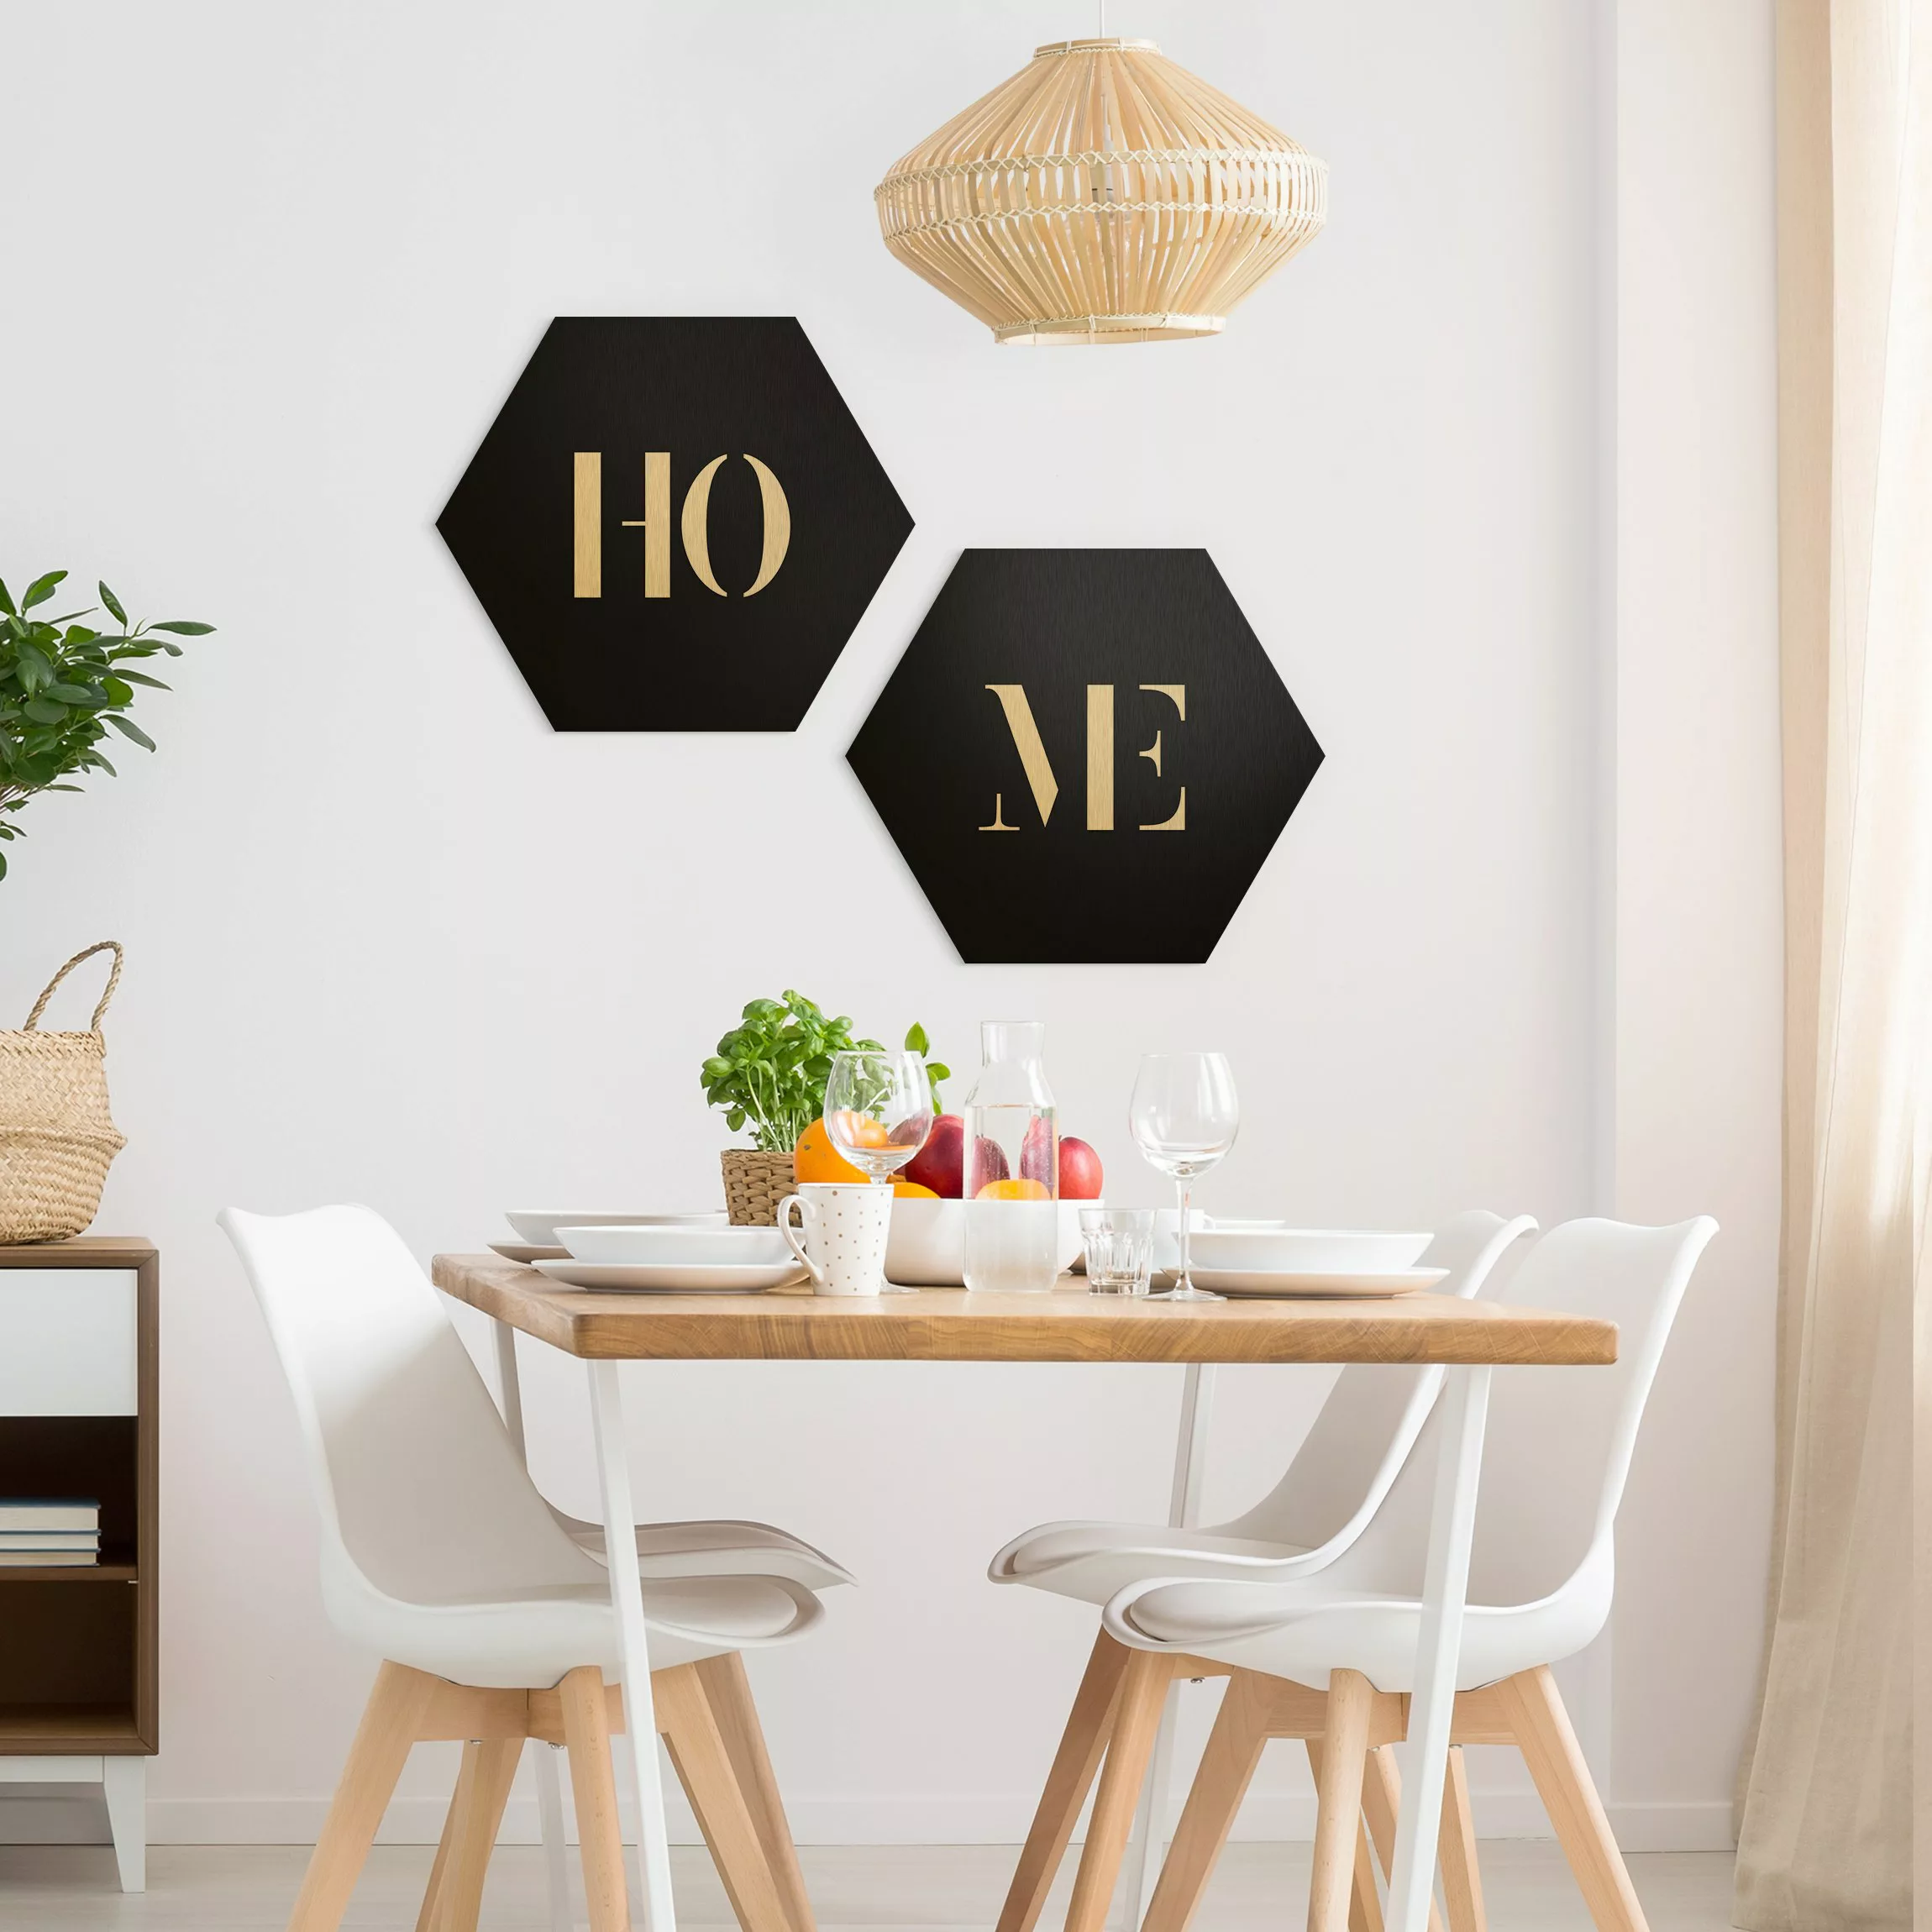 2-teiliges Hexagon-Alu-Dibond Bild Buchstaben HOME Weiß Set I günstig online kaufen